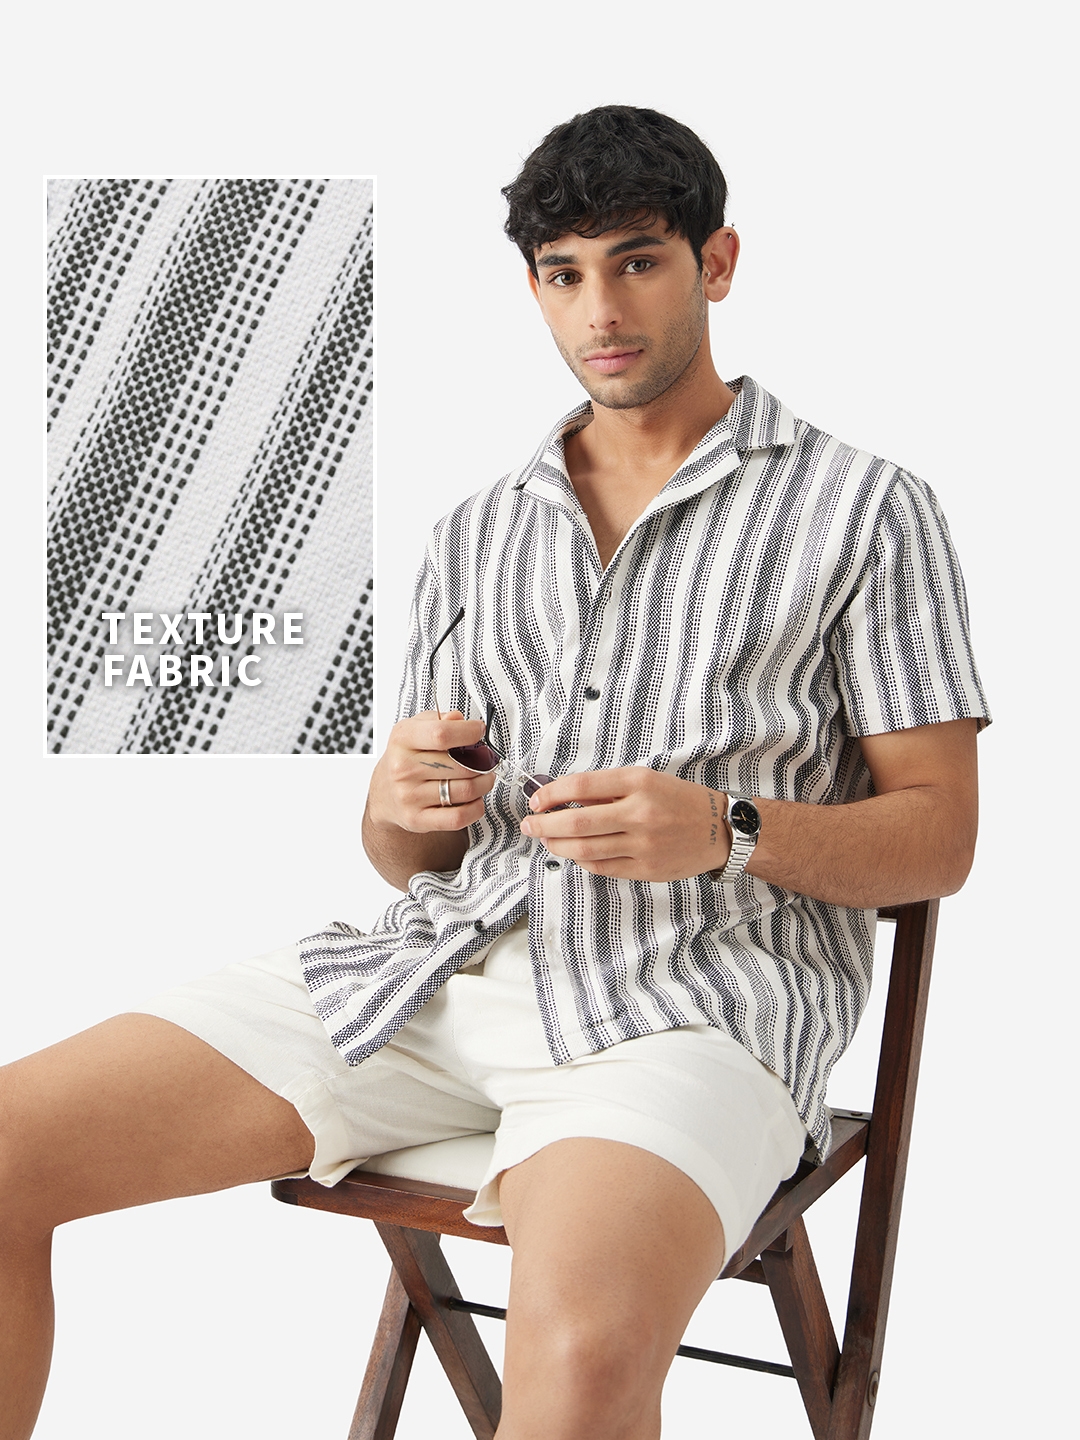 Men's TSS Originals: Monochrome Stripes Men's Textured Shirts